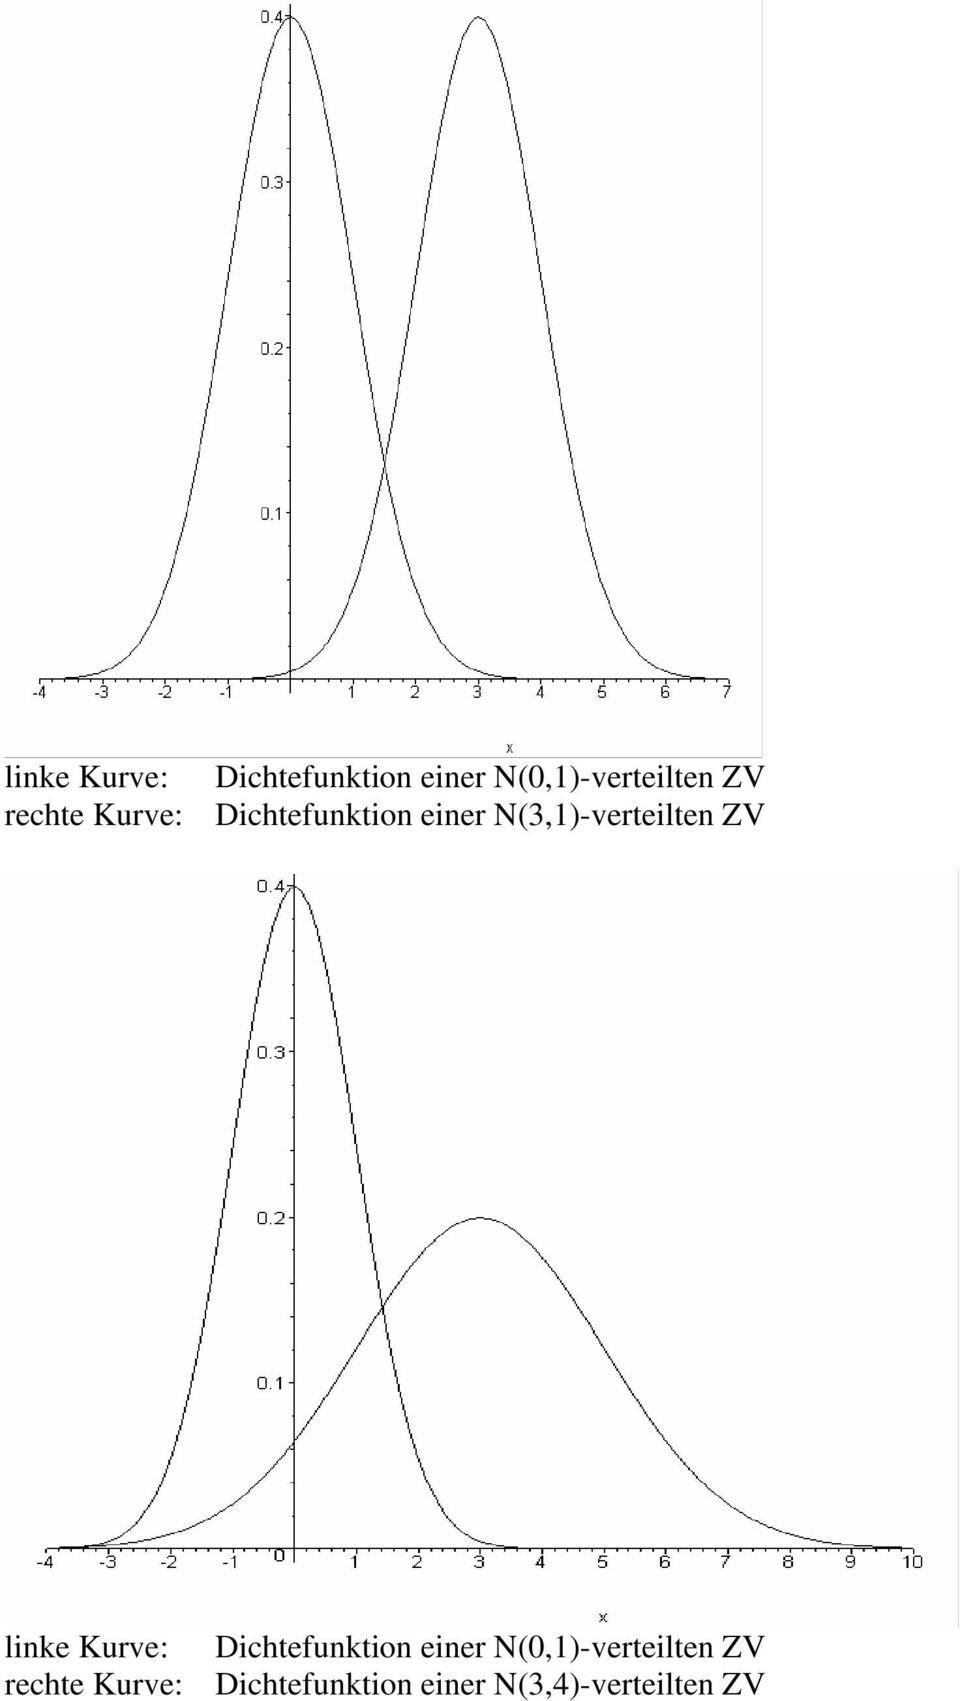 rechte Kurve: Dichtefunktion einer N(3,4)-verteilten ZV